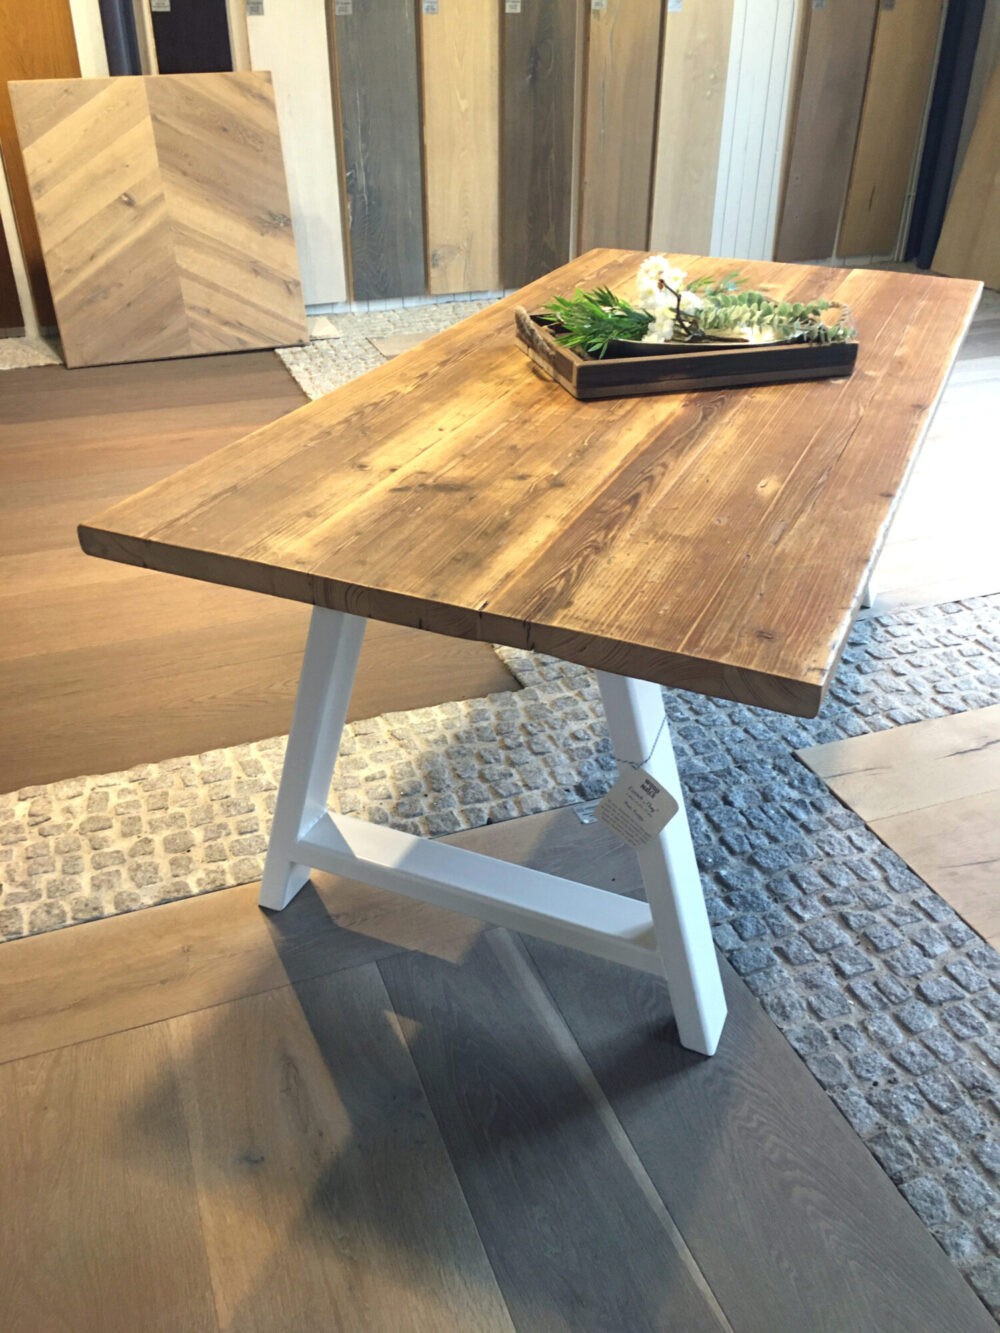 Tisch aus altem Bauholz mit einzigartiger Tischplatte.